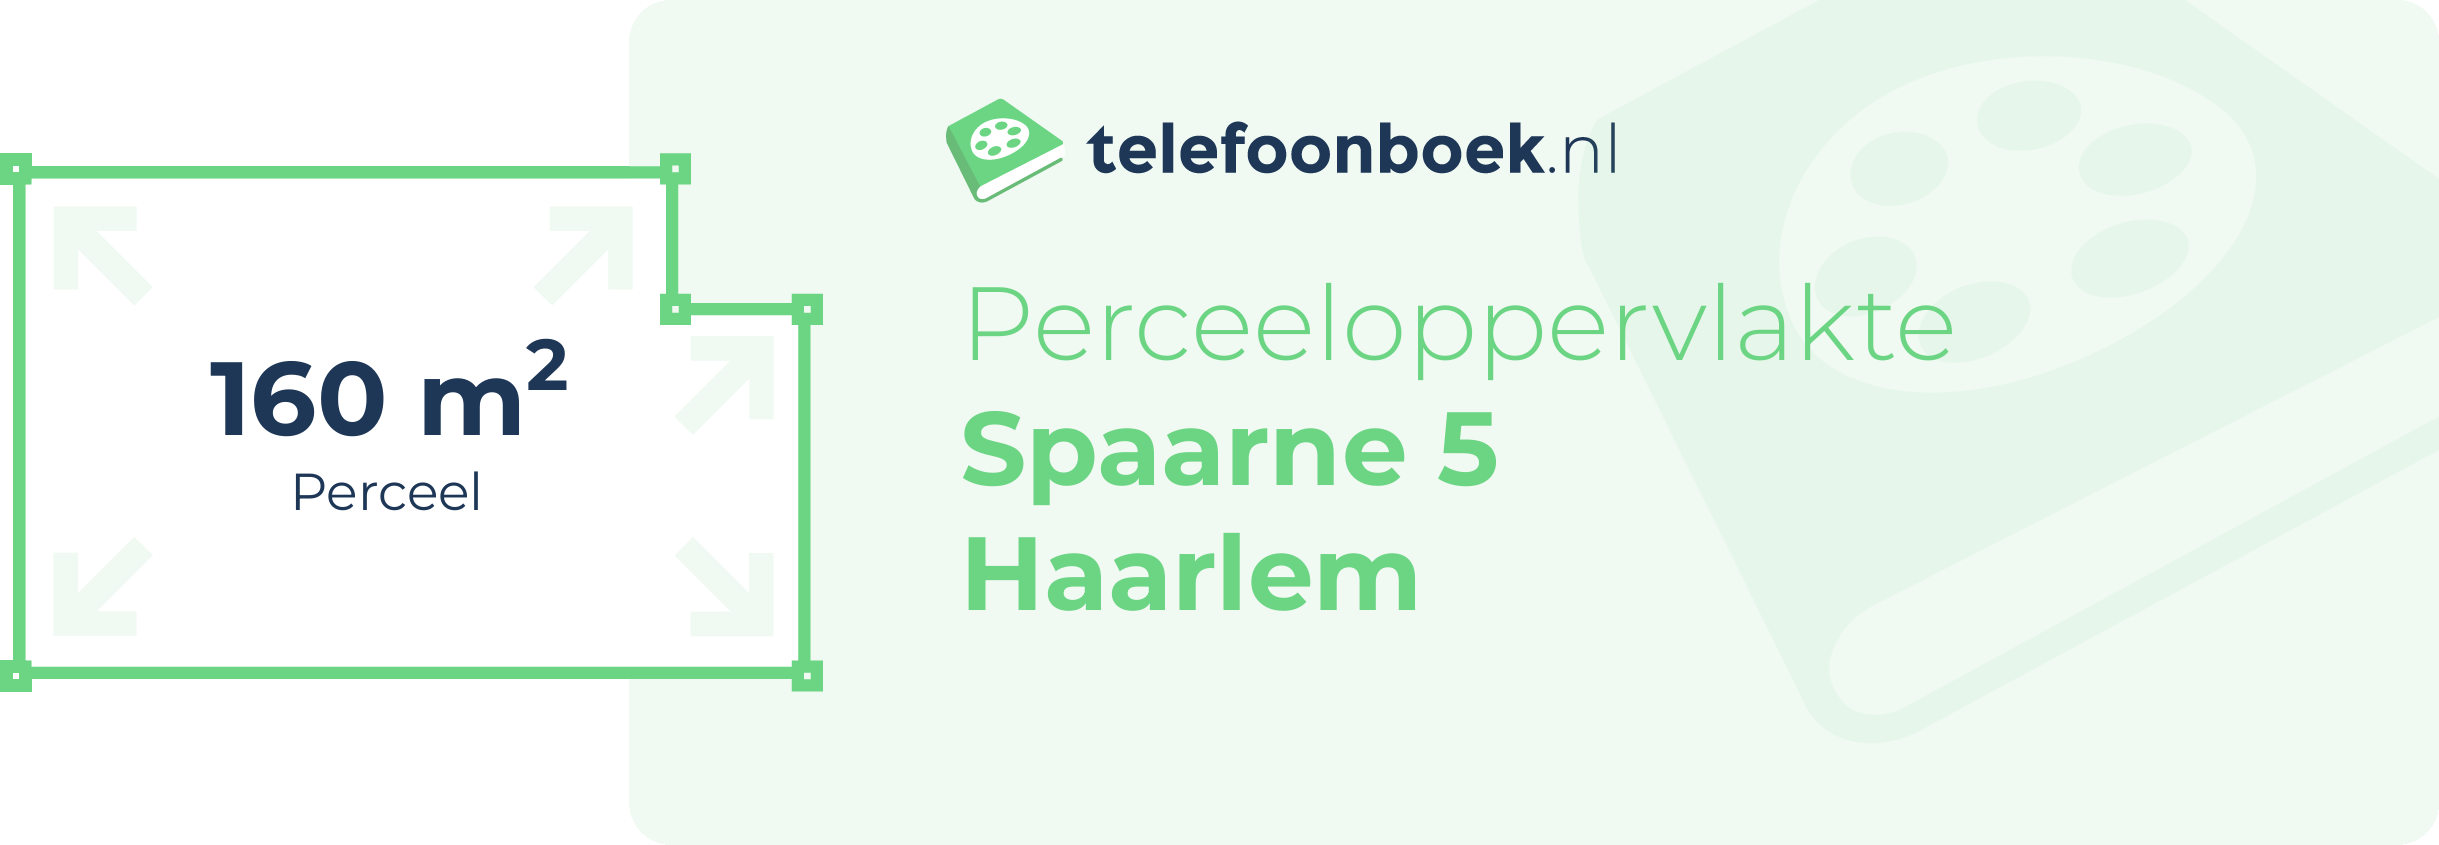 Perceeloppervlakte Spaarne 5 Haarlem